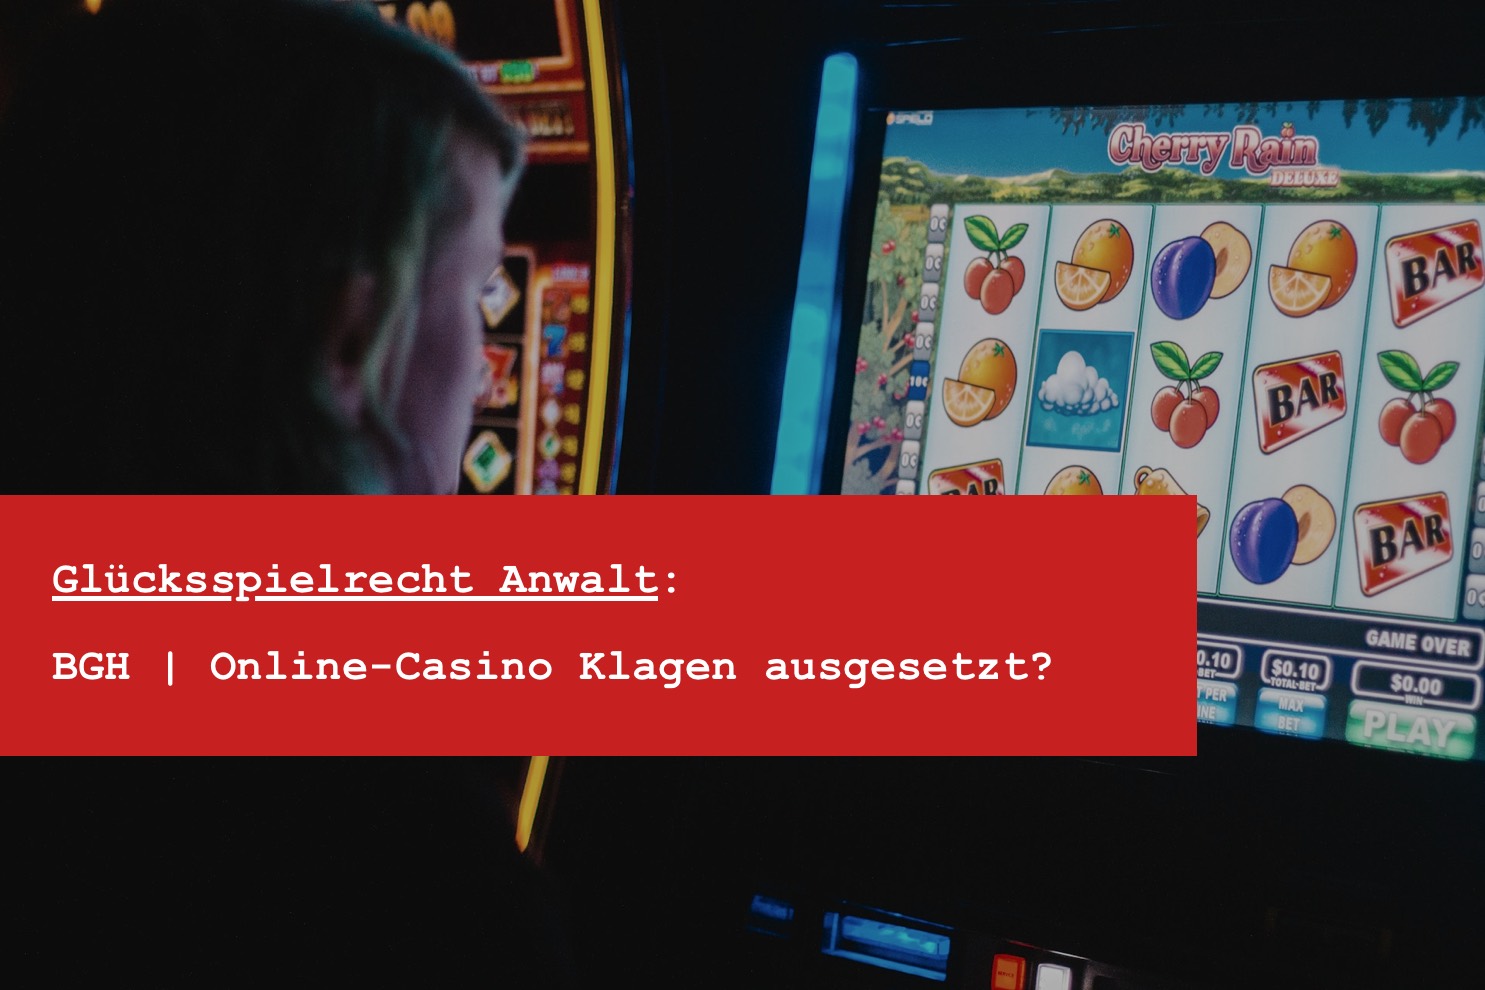 Glücksspielrecht Anwalt - Online Casino Klage und Online Casino Prozessfinanzierung